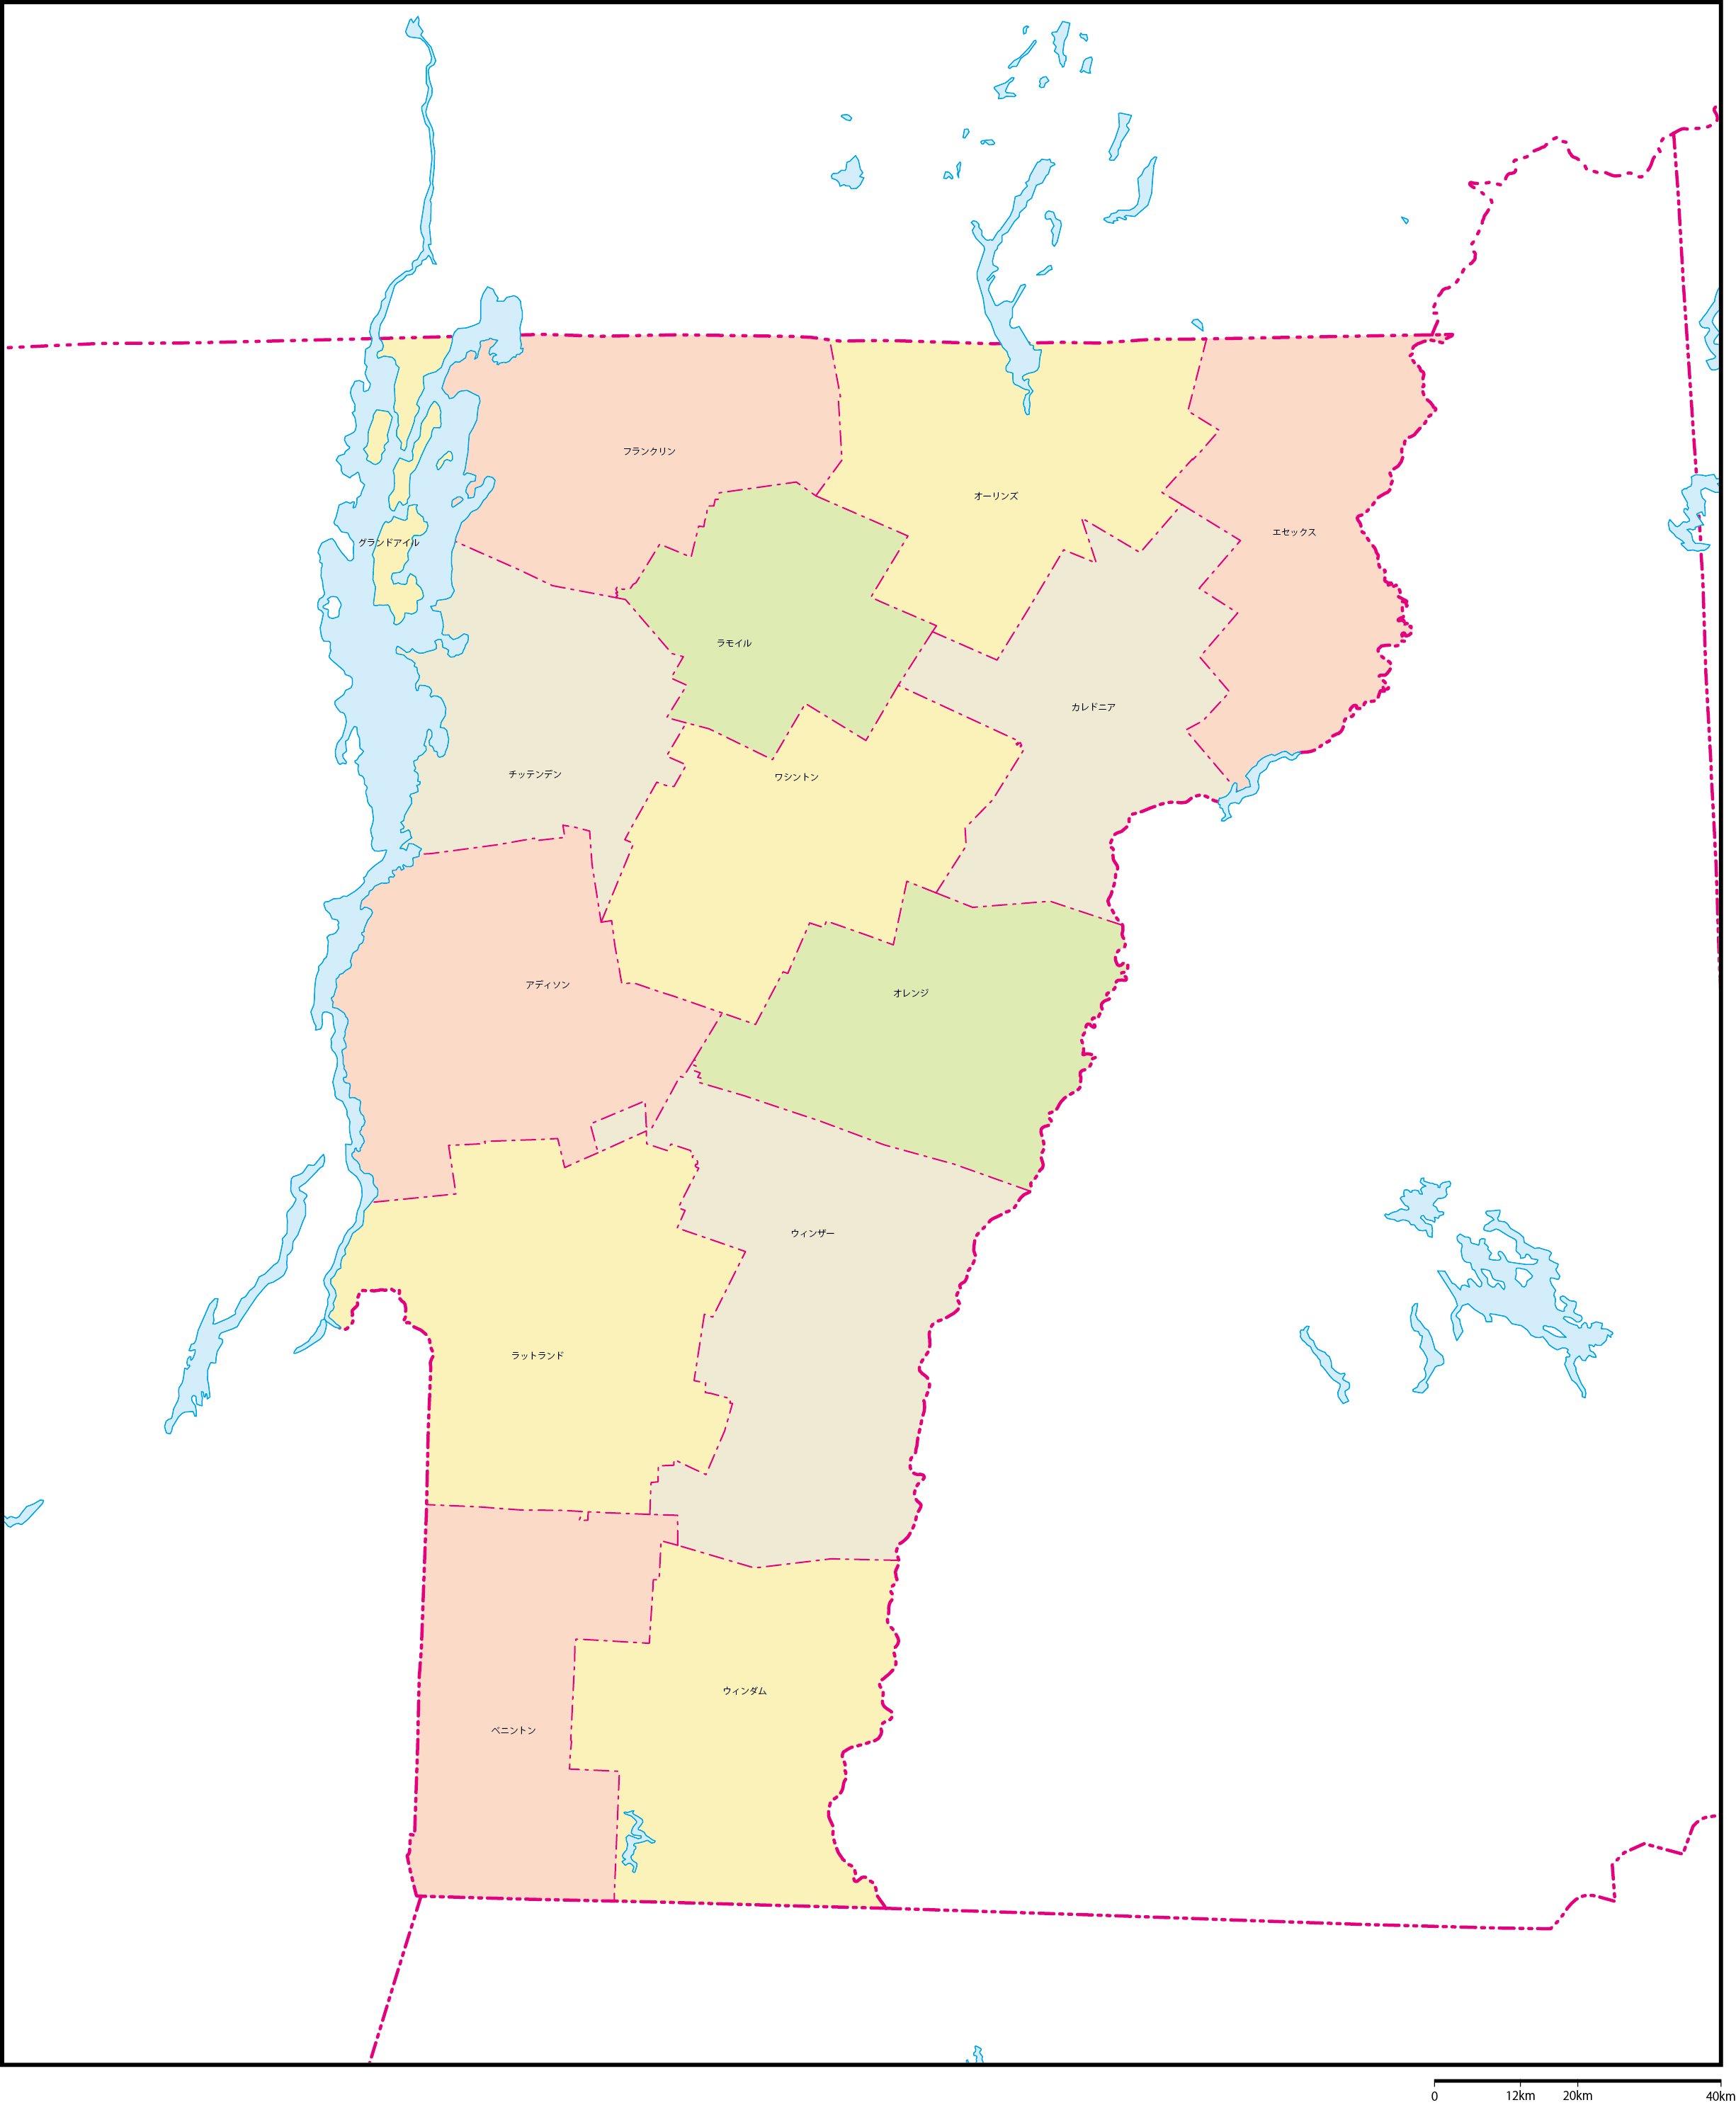 バーモント州郡色分け地図郡名あり(日本語)フリーデータの画像